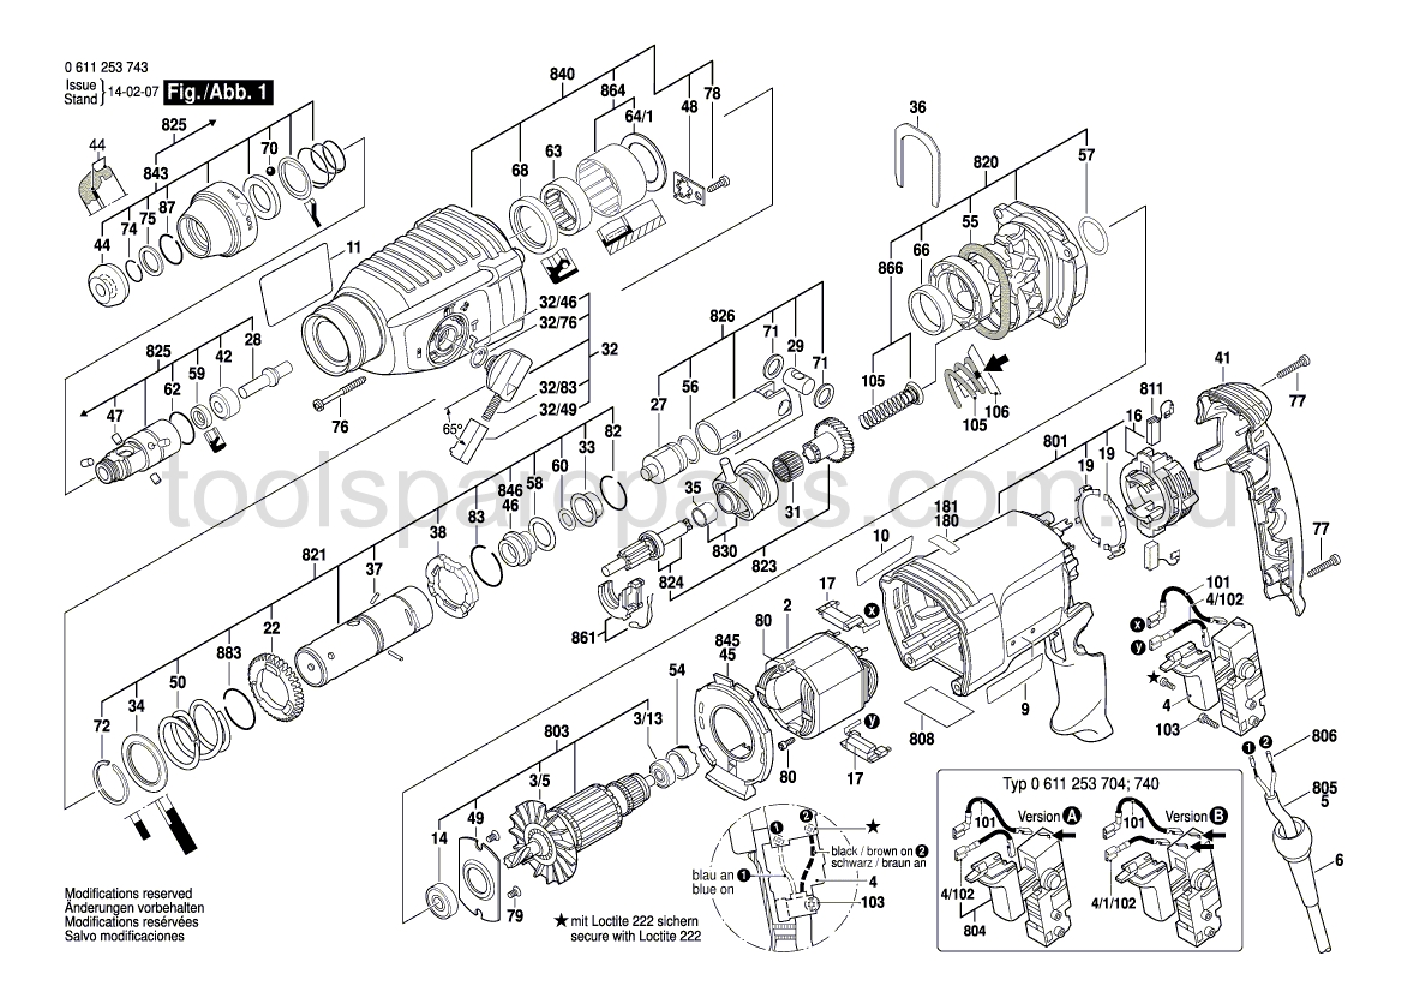 Bosch GBH 2-26 DRE 0611253767  Diagram 1